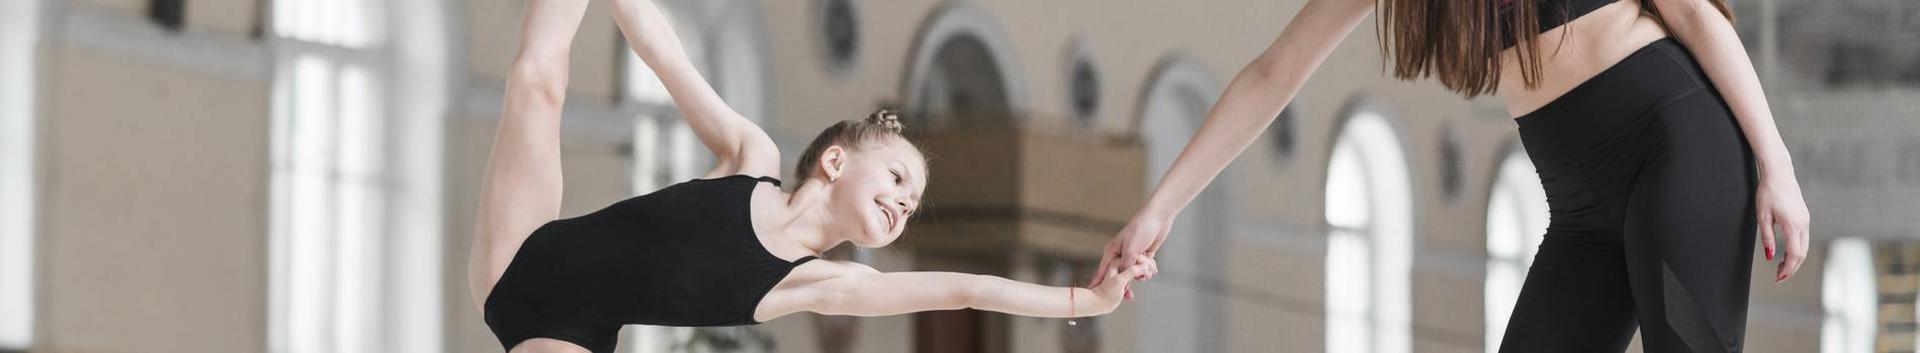 MTÜ Tallinna Tantsukool on 2006 aastal loodud erahuvialakool eelkooli- ja kooliealistele lastele ning noorukitele nende mitmekülgseks tantsualaseks harimiseks...